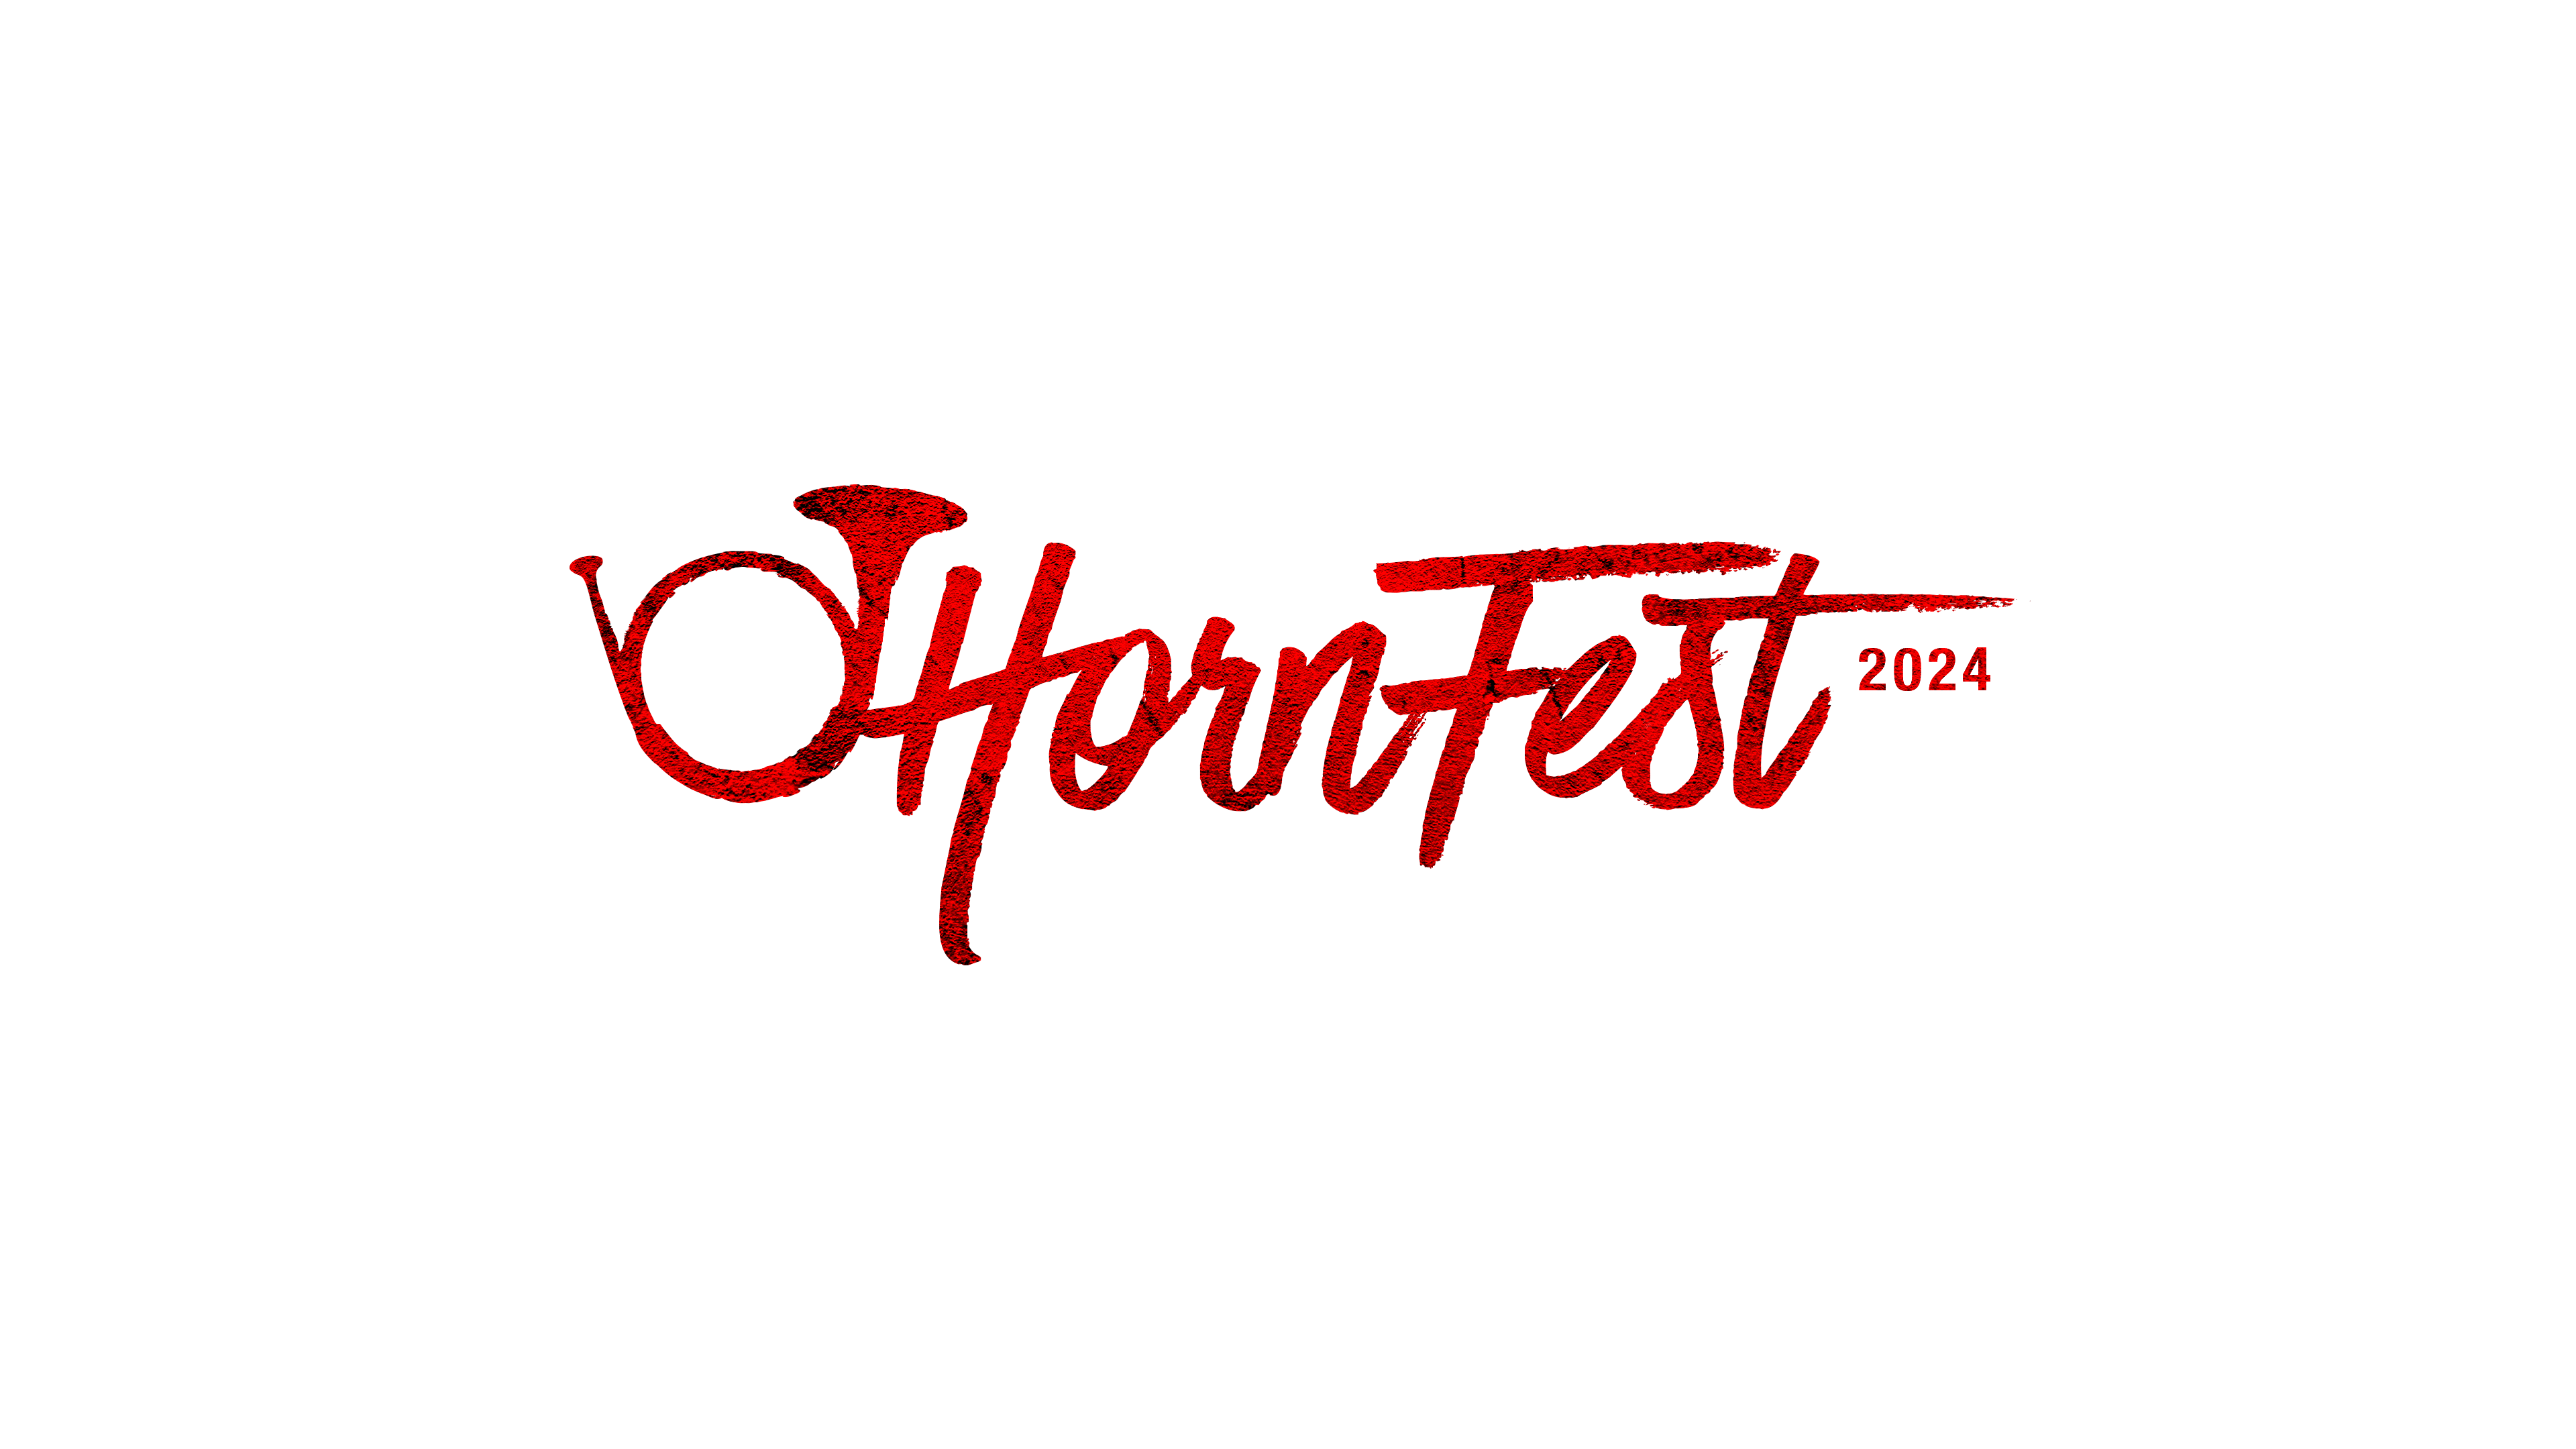 Hornfest 2024 logo